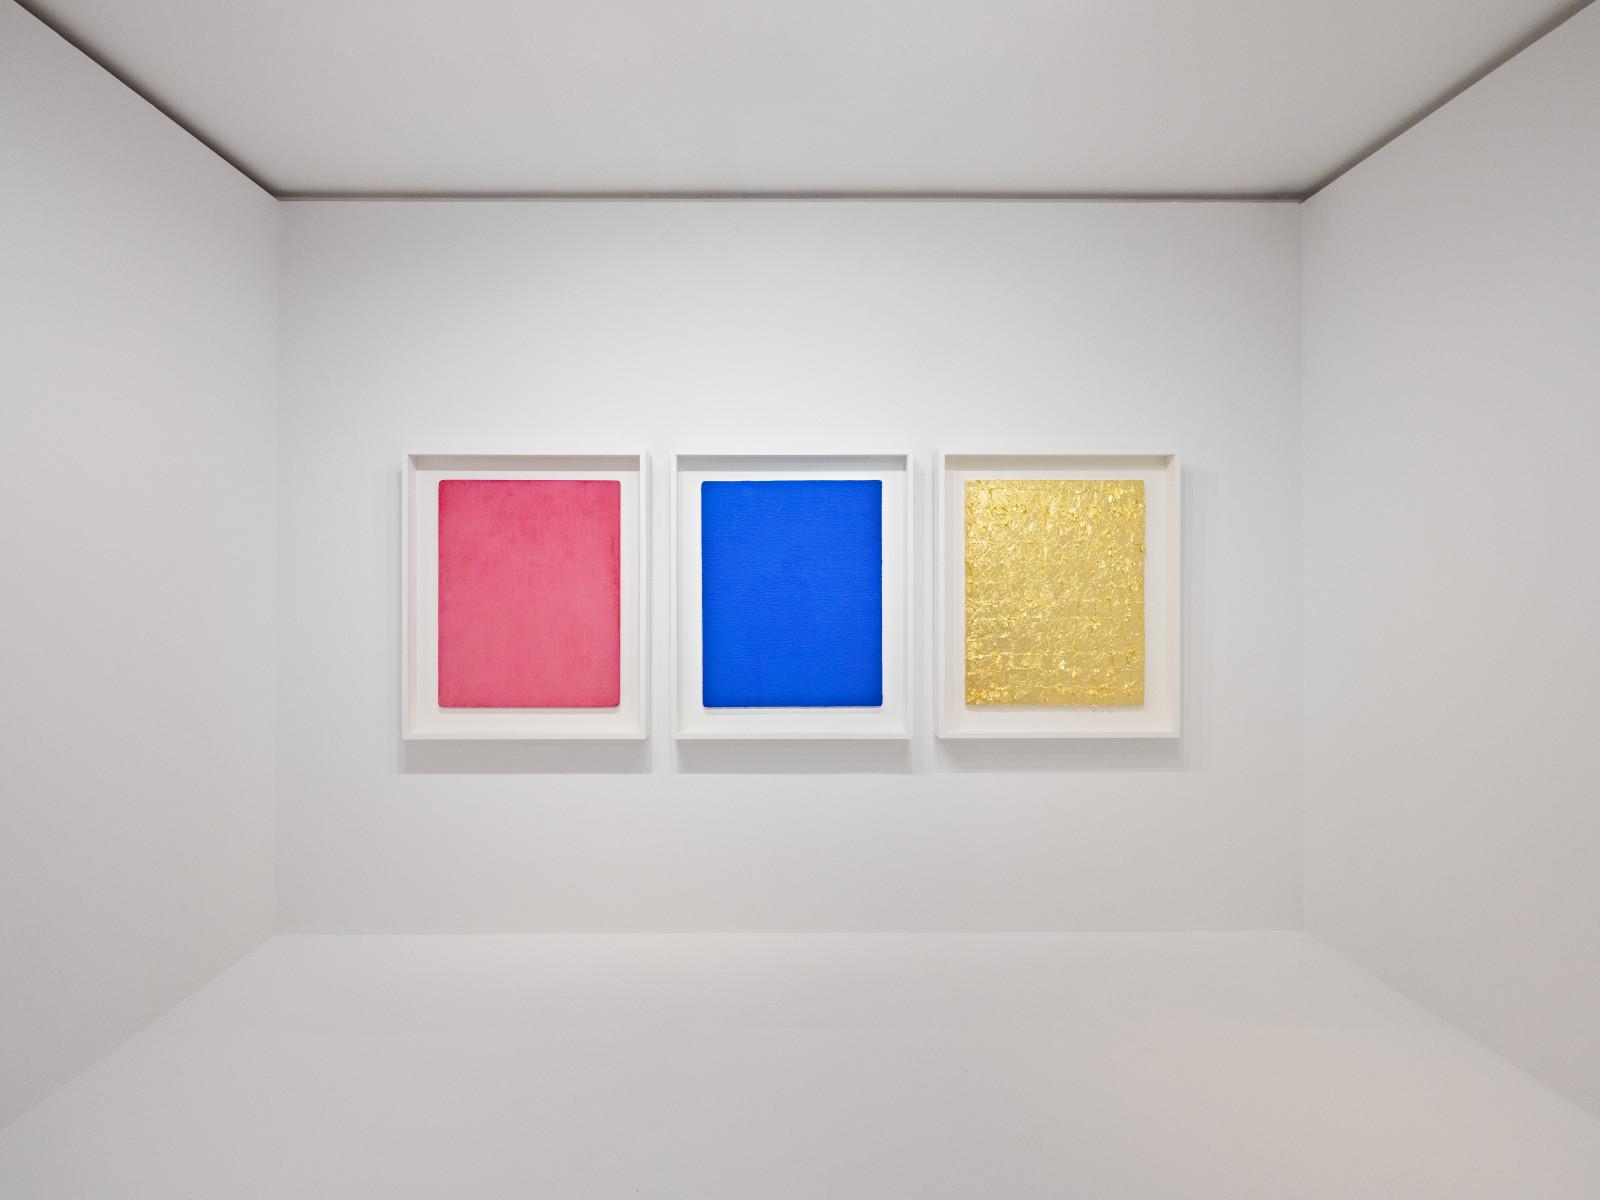 View of the exhibition "Yves Klein, Intime", Hôtel de Caumont, Aix-en-Provence, France, 2022